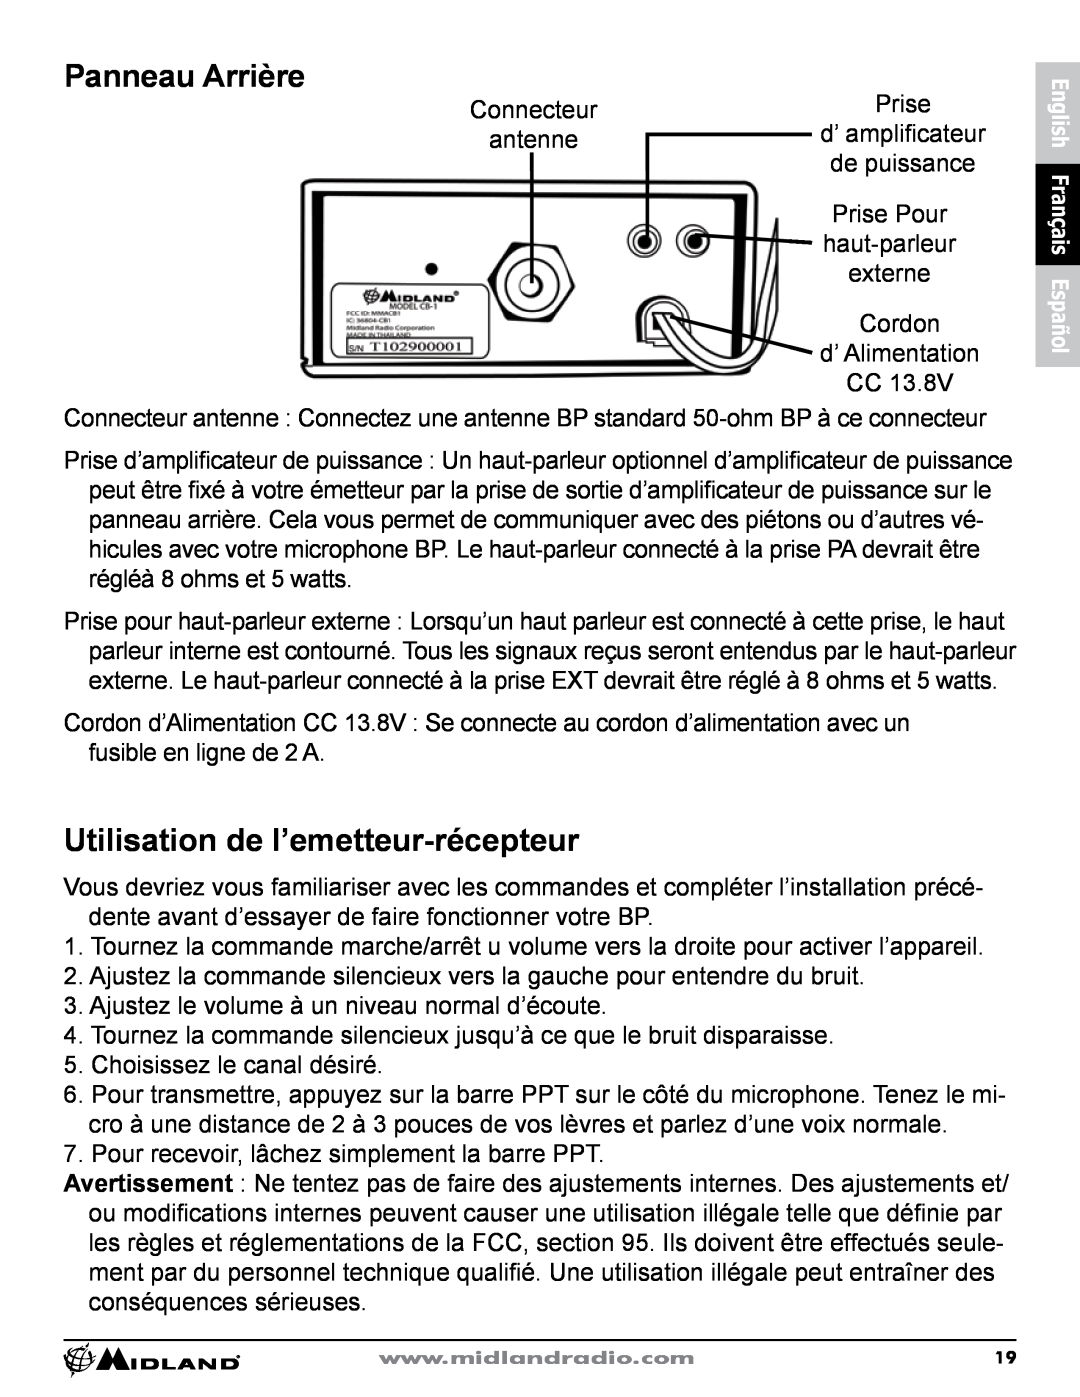 Midland Radio CB-1 owner manual Panneau Arrière, Utilisation de l’emetteur-récepteur 